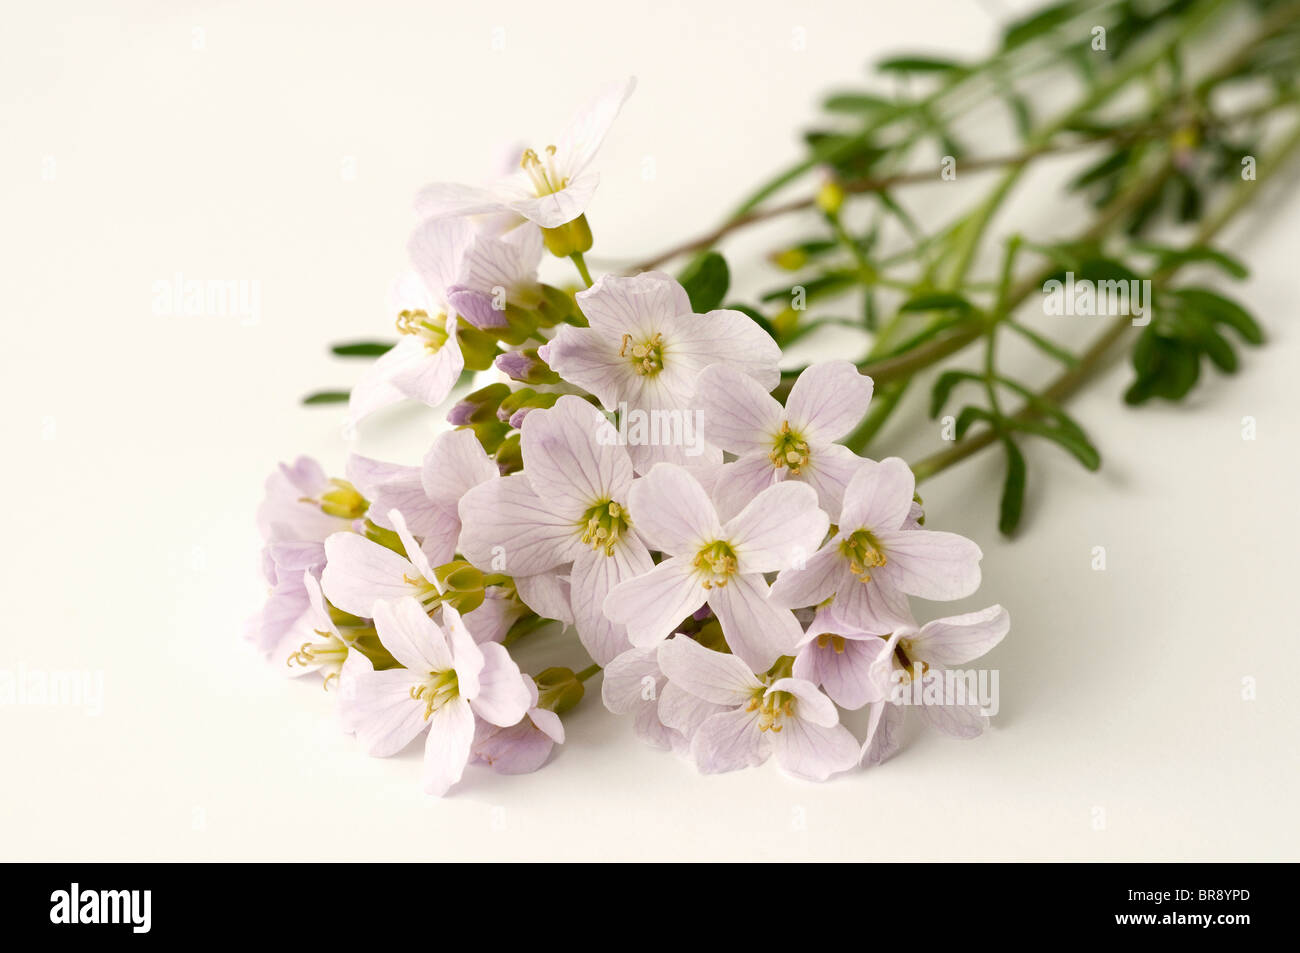 Kuckuck Blütenstiele, Ladys Kittel (Cardamine Pratensis), Blüte. Studio Bild vor einem weißen Hintergrund. Stockfoto